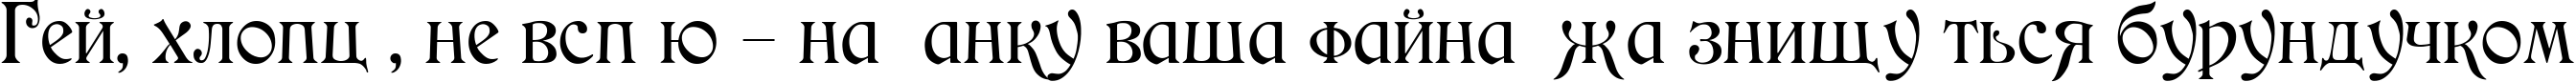 Пример написания шрифтом Medieval текста на украинском